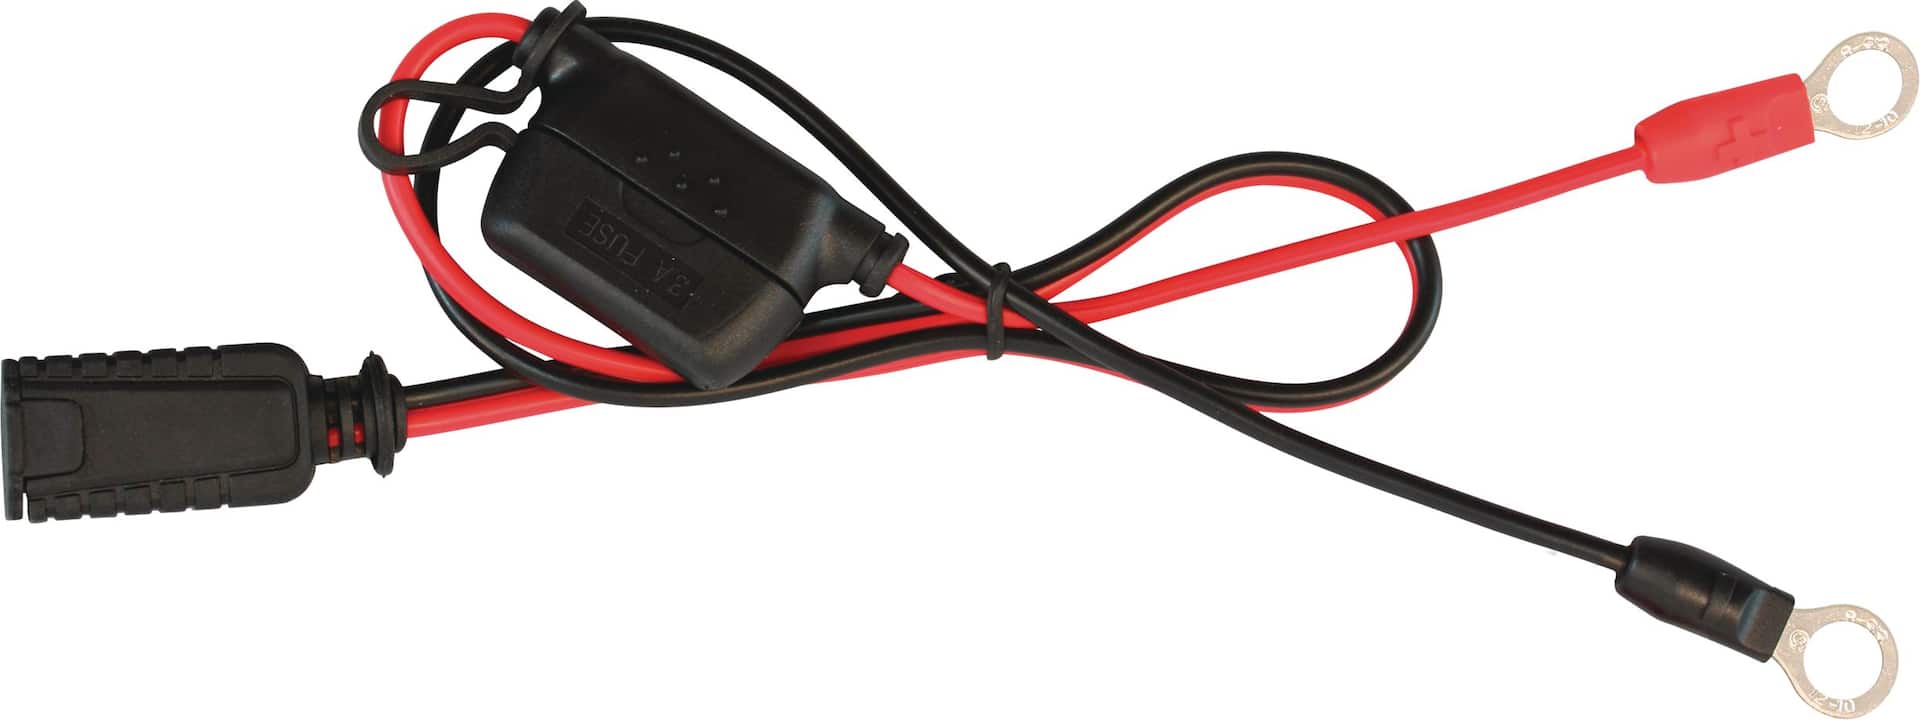 2 Pièces Câble de batterie, Câble de Chargeur Batterie de Voiture 12v fils  Rouges et Noirs avec Bornes à Anneau fil de Cuivre pour Camion, Moto